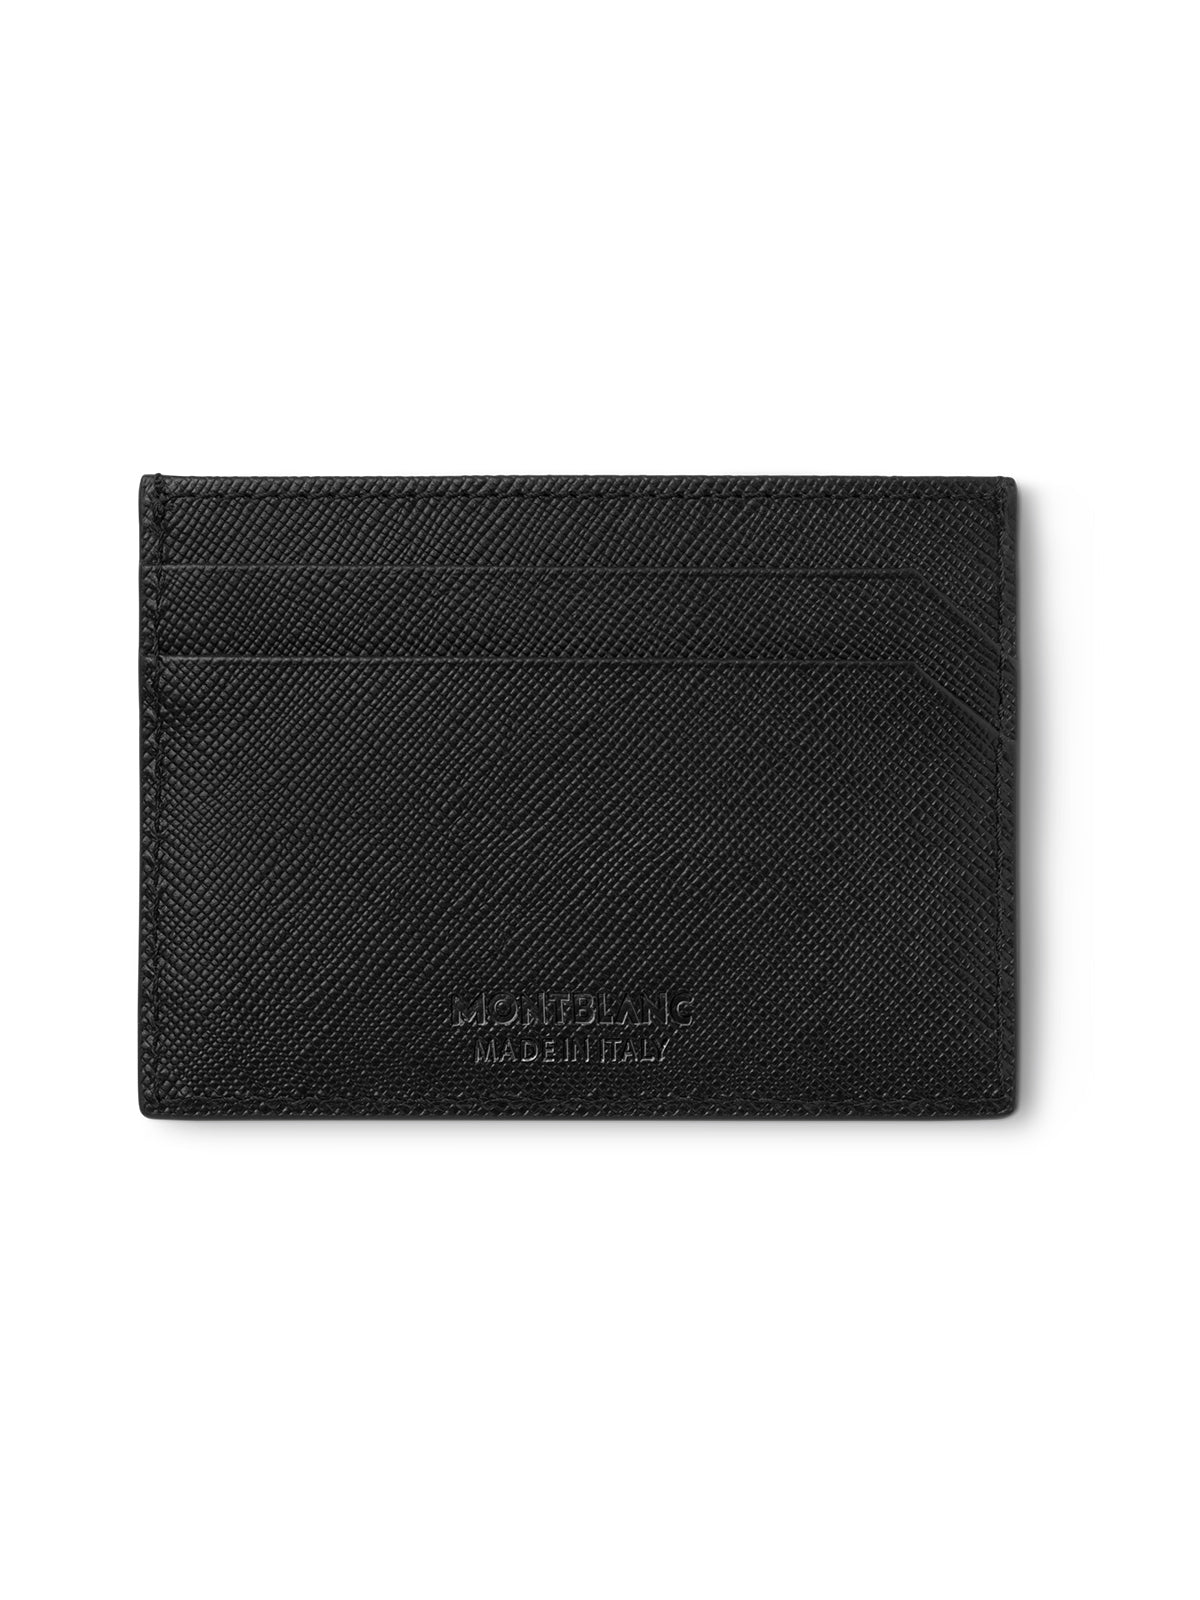 SALE Montblanc Sartorial Black Leather Pocket Holder MB114603 *Ex-Display*